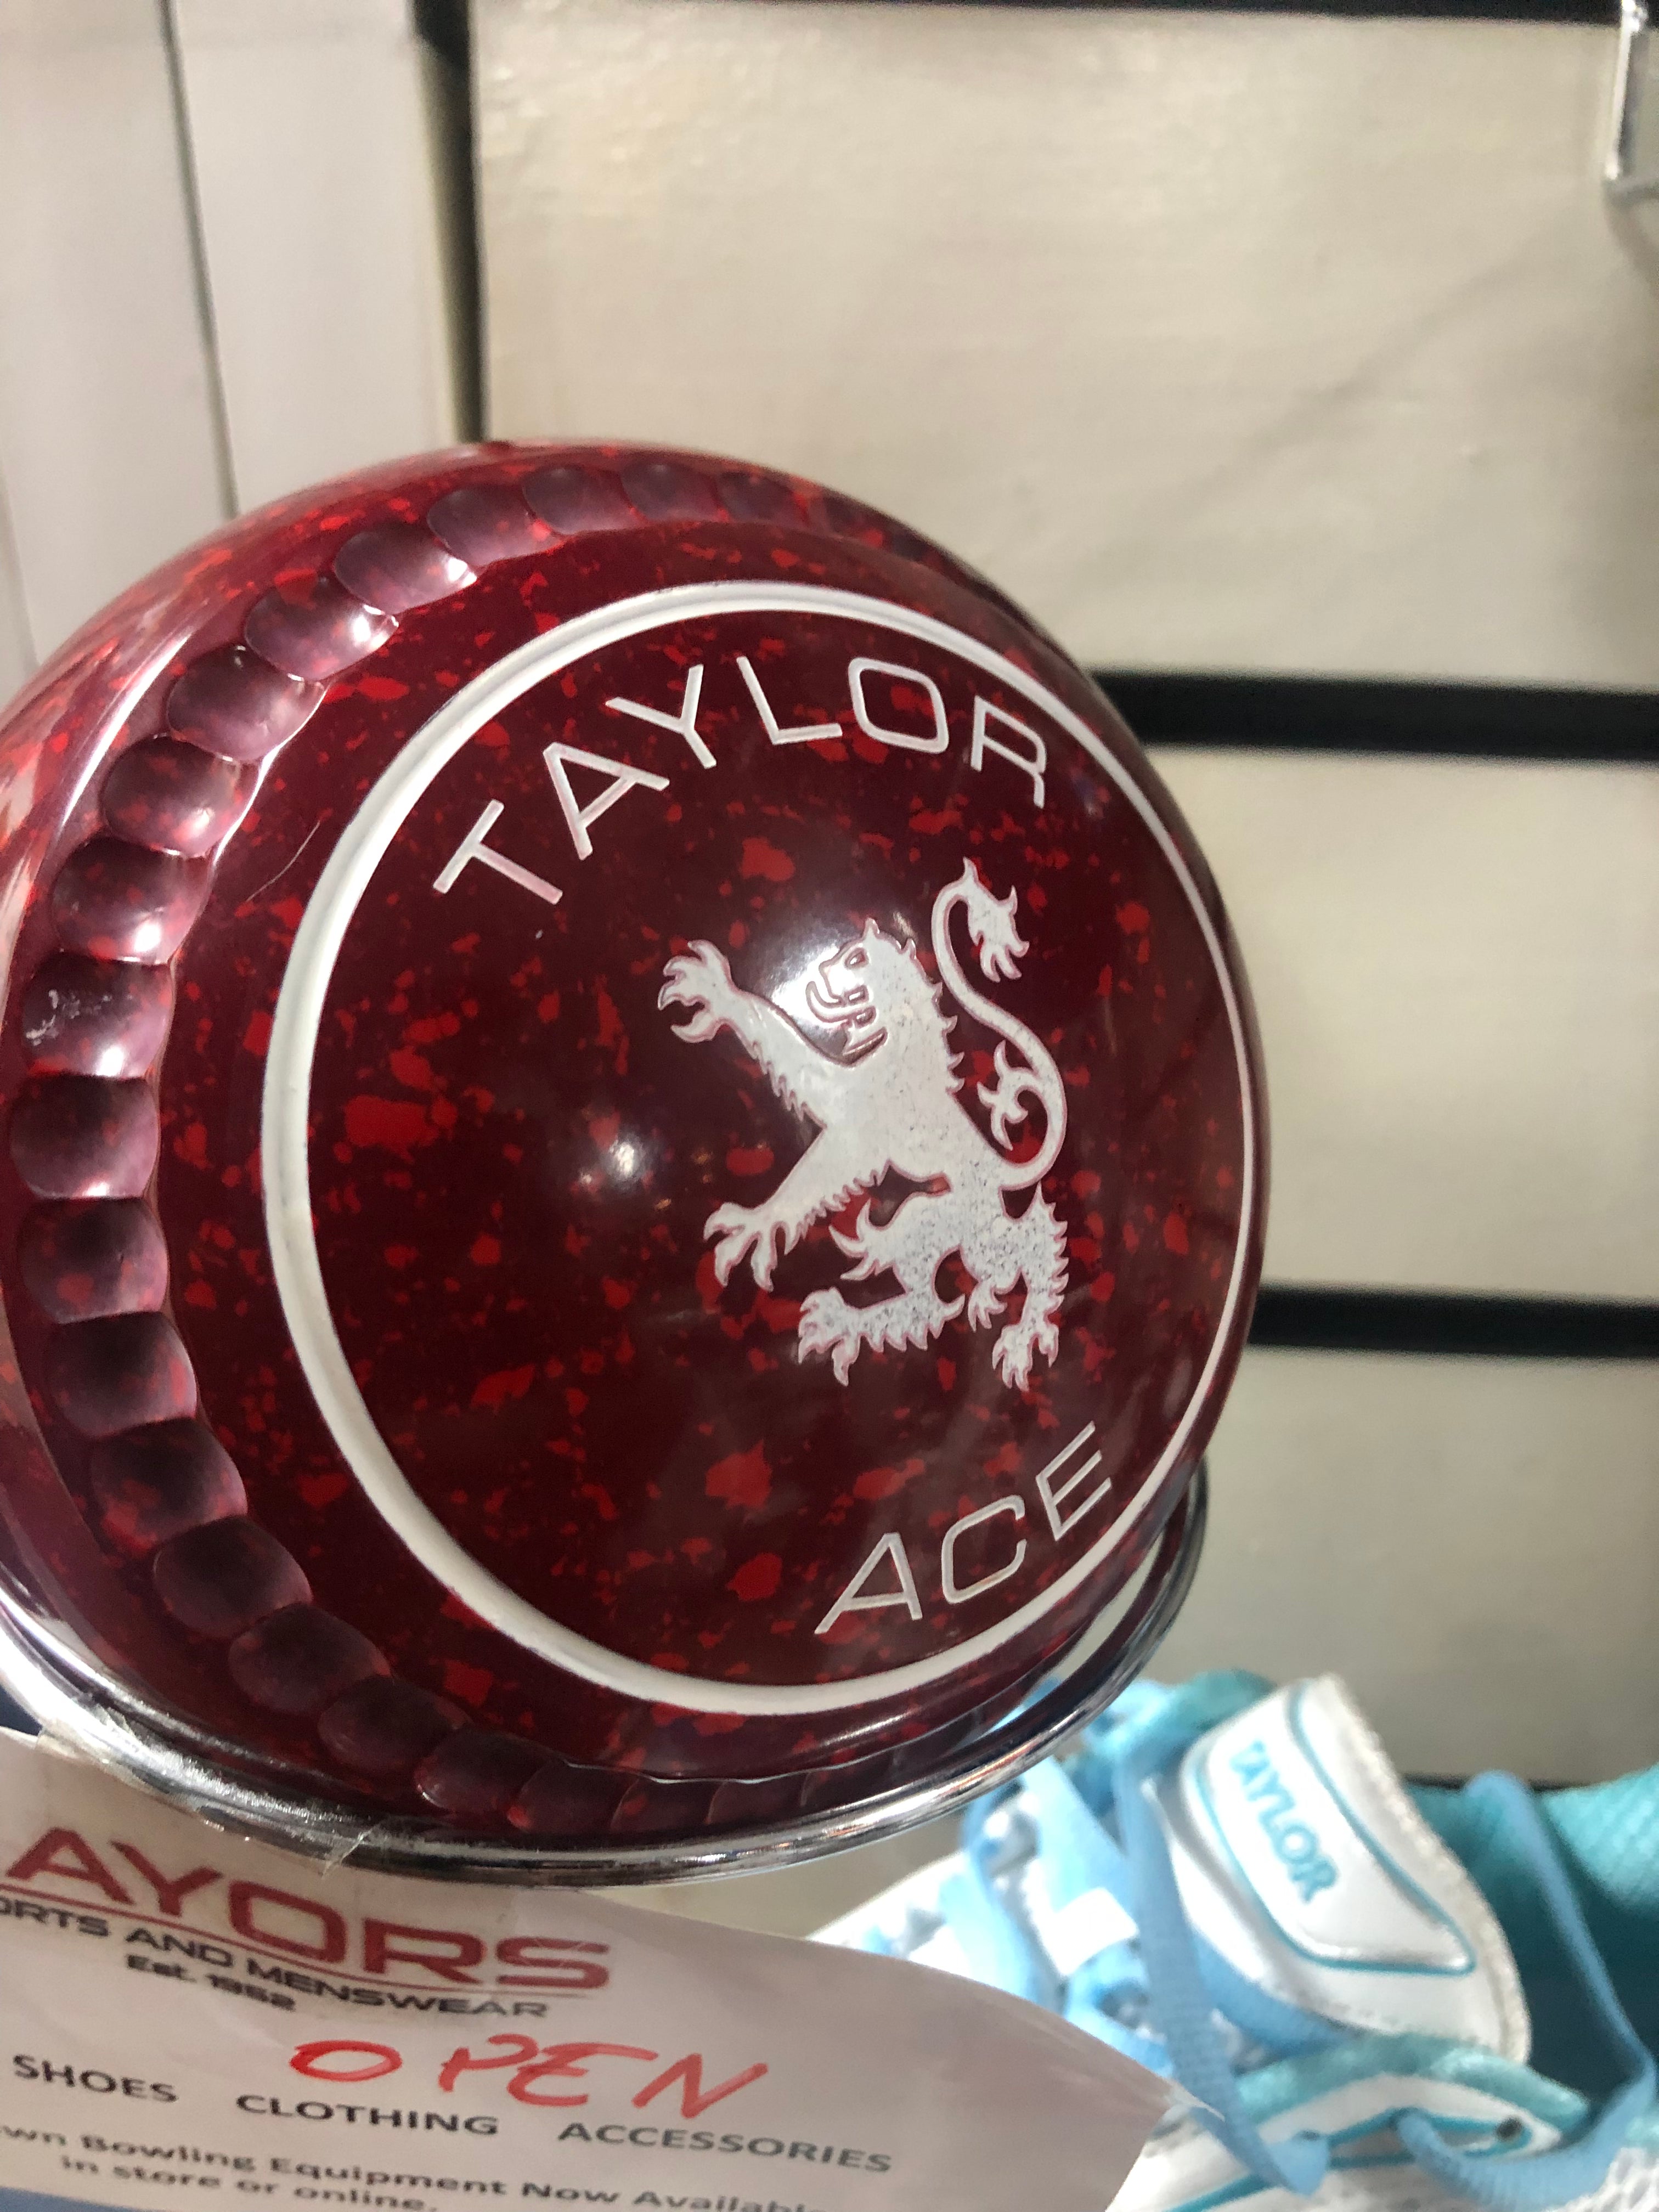 Taylor Ace Lawn Bowls